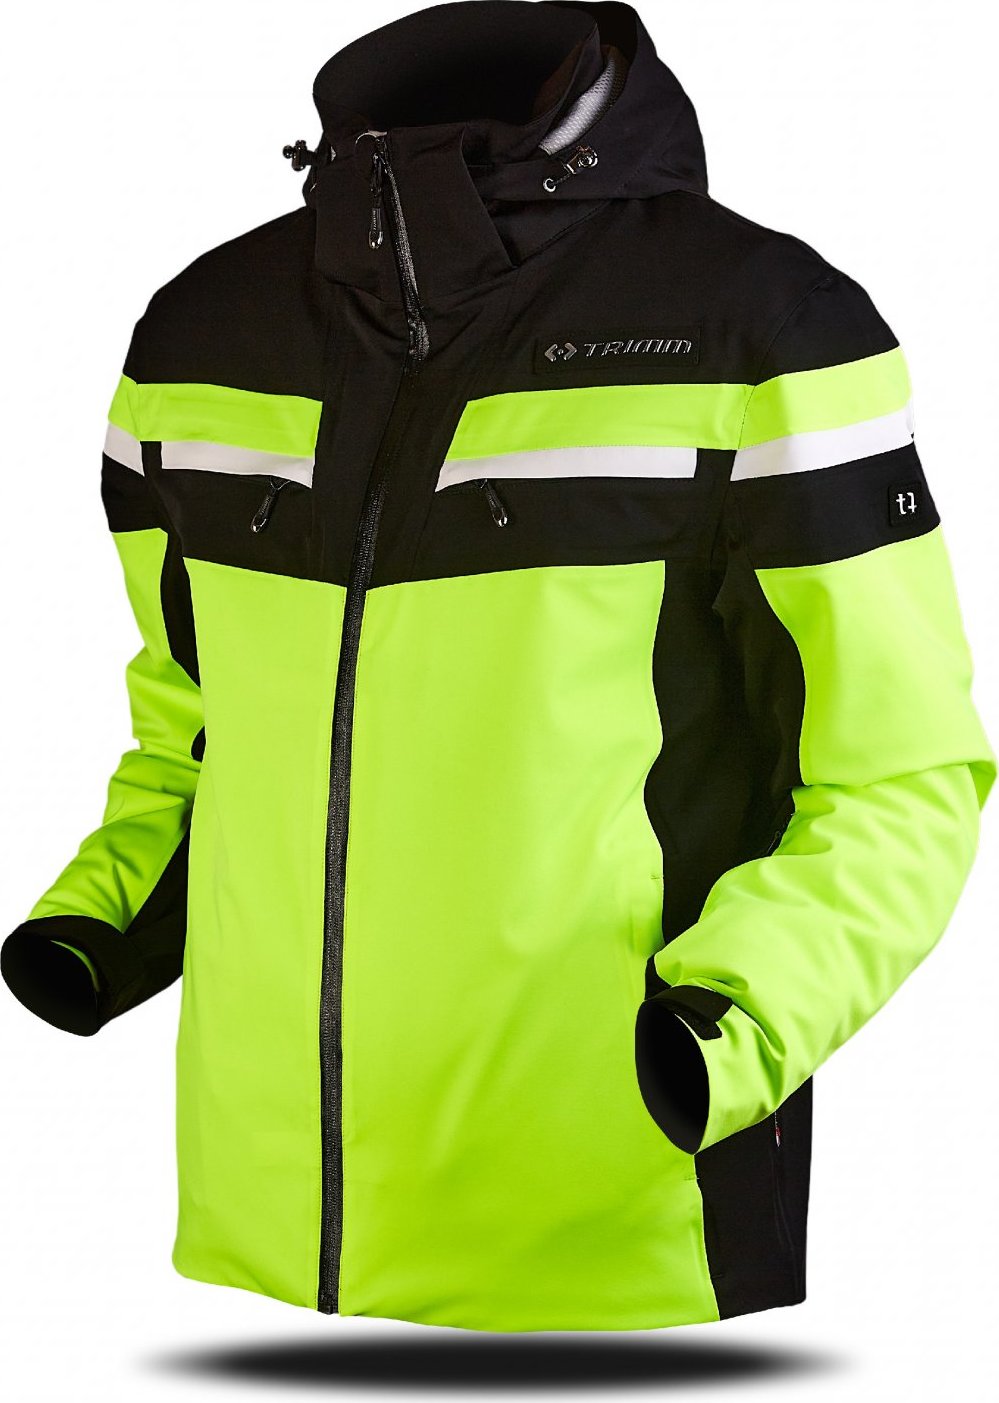 Pánská lyžařská bunda TRIMM Fusion žlutá Velikost: M, Barva: lemon/black/white